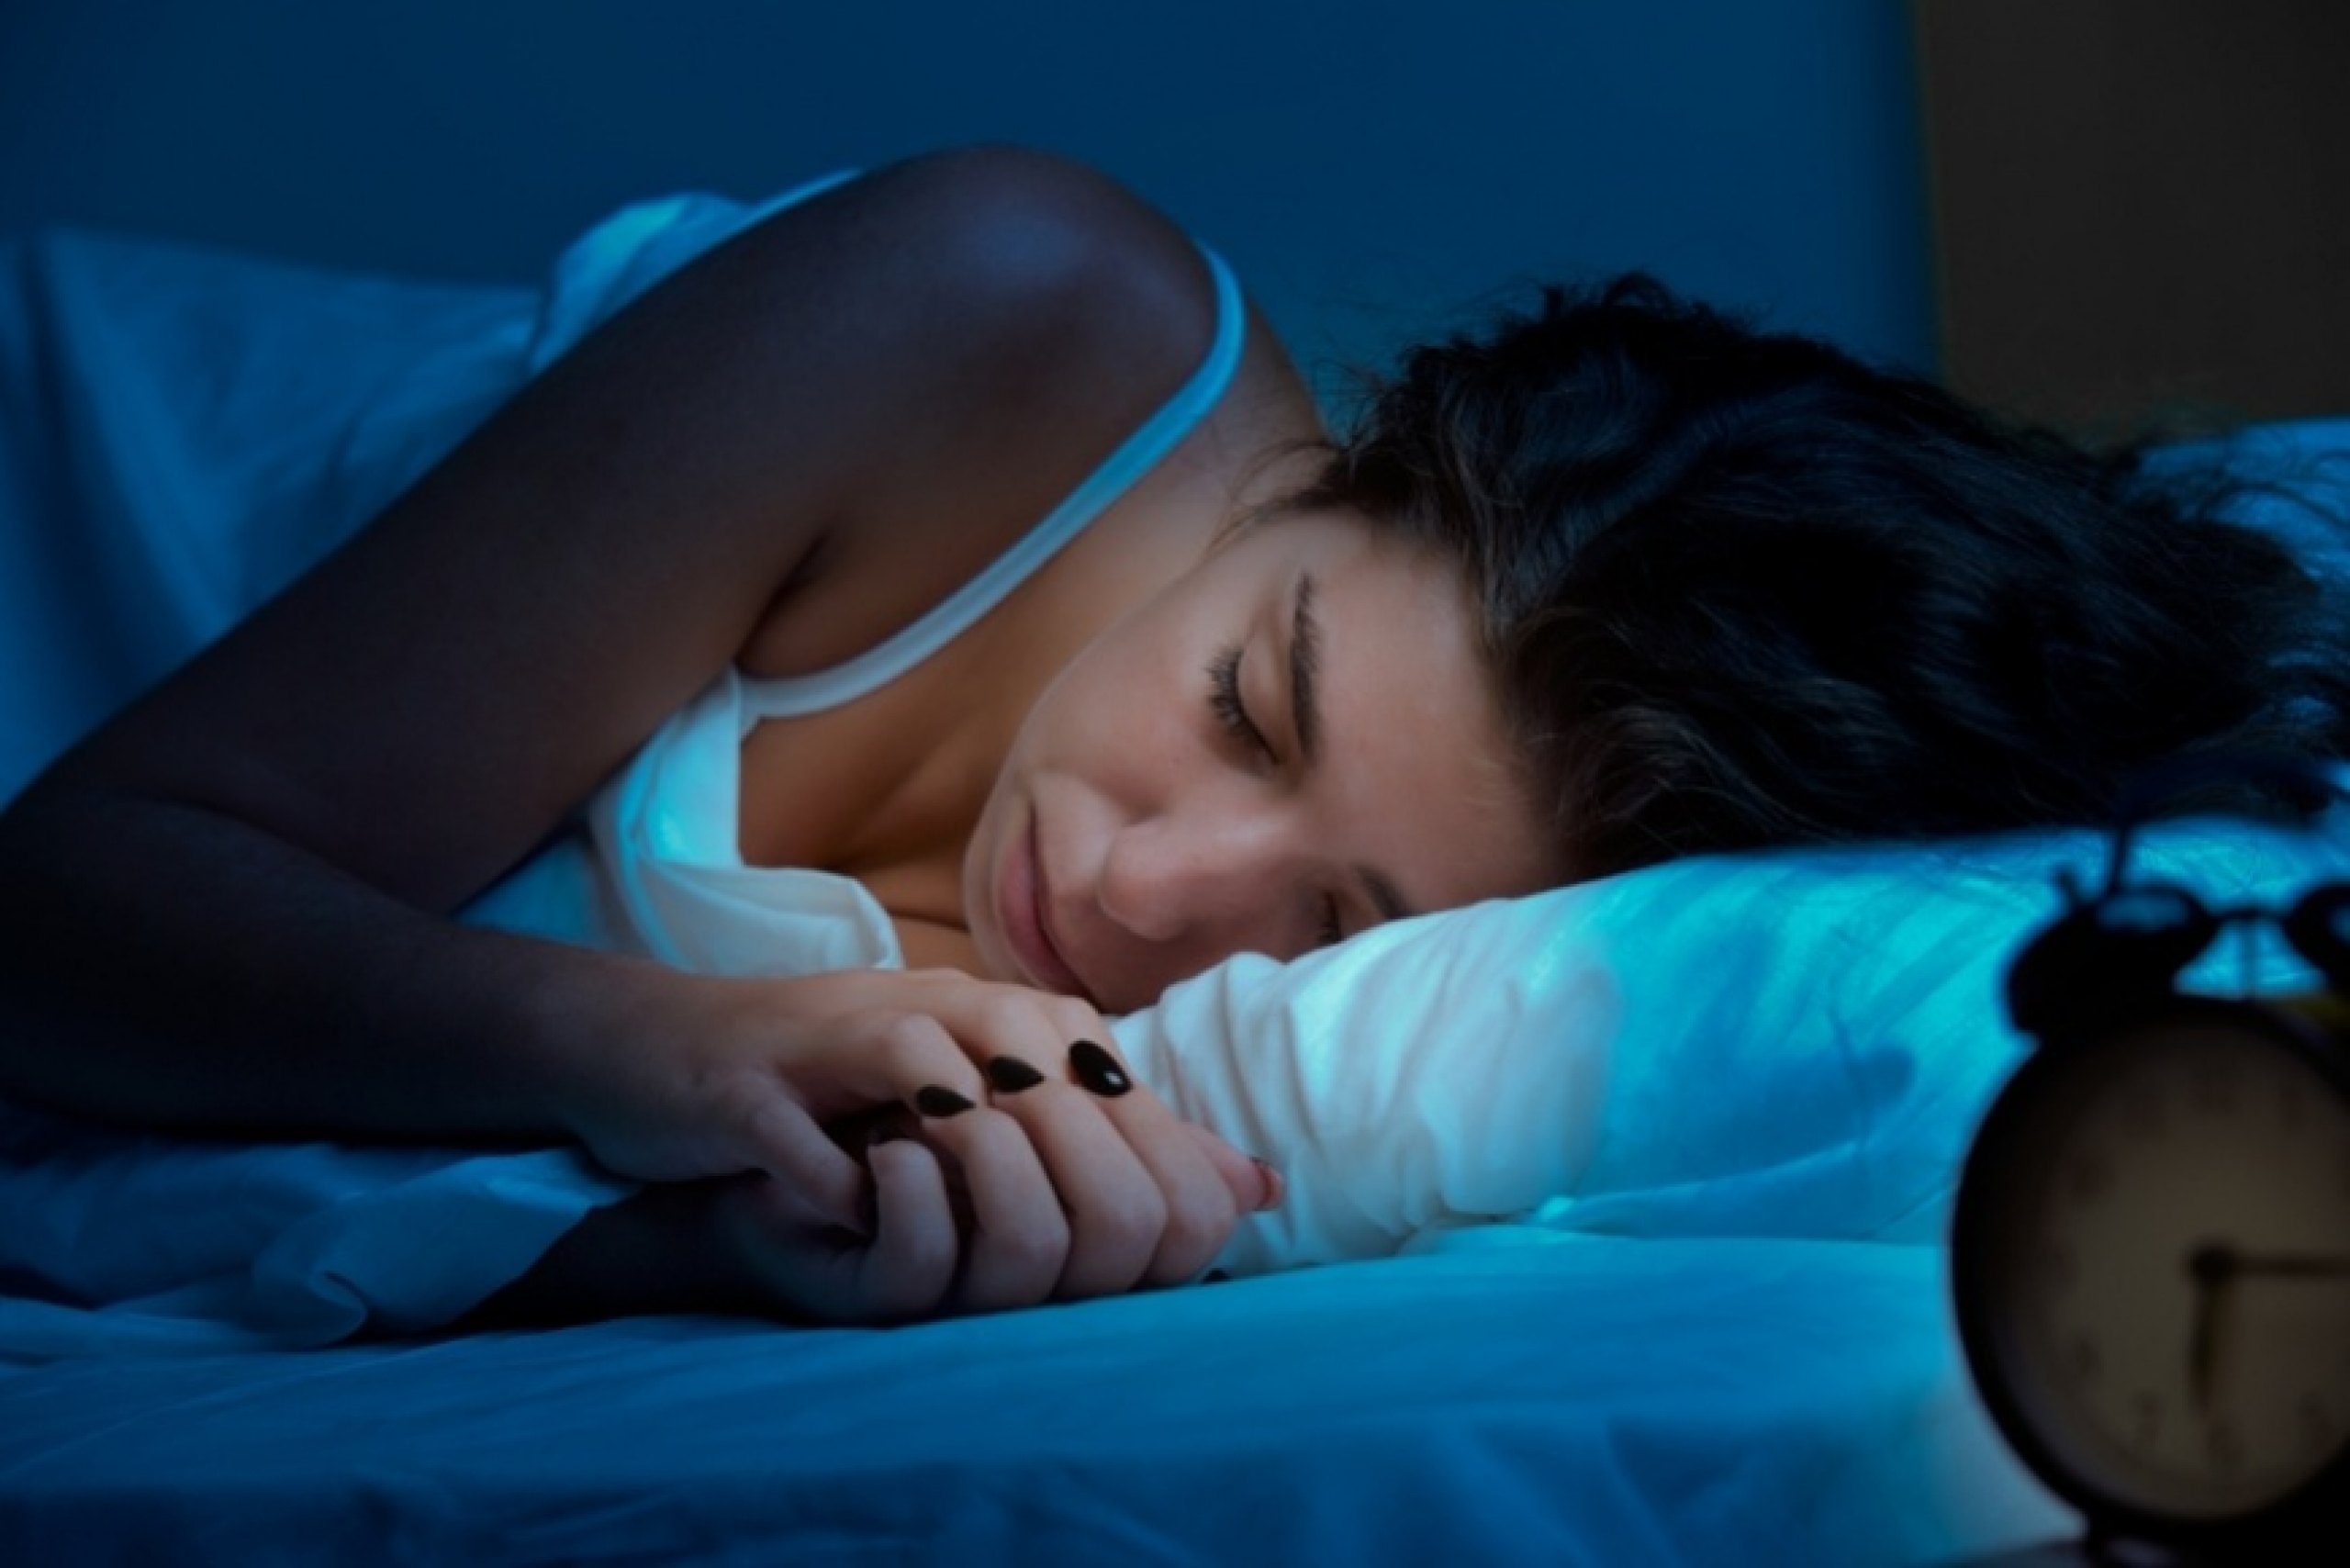 Особенности работы организма во время сна